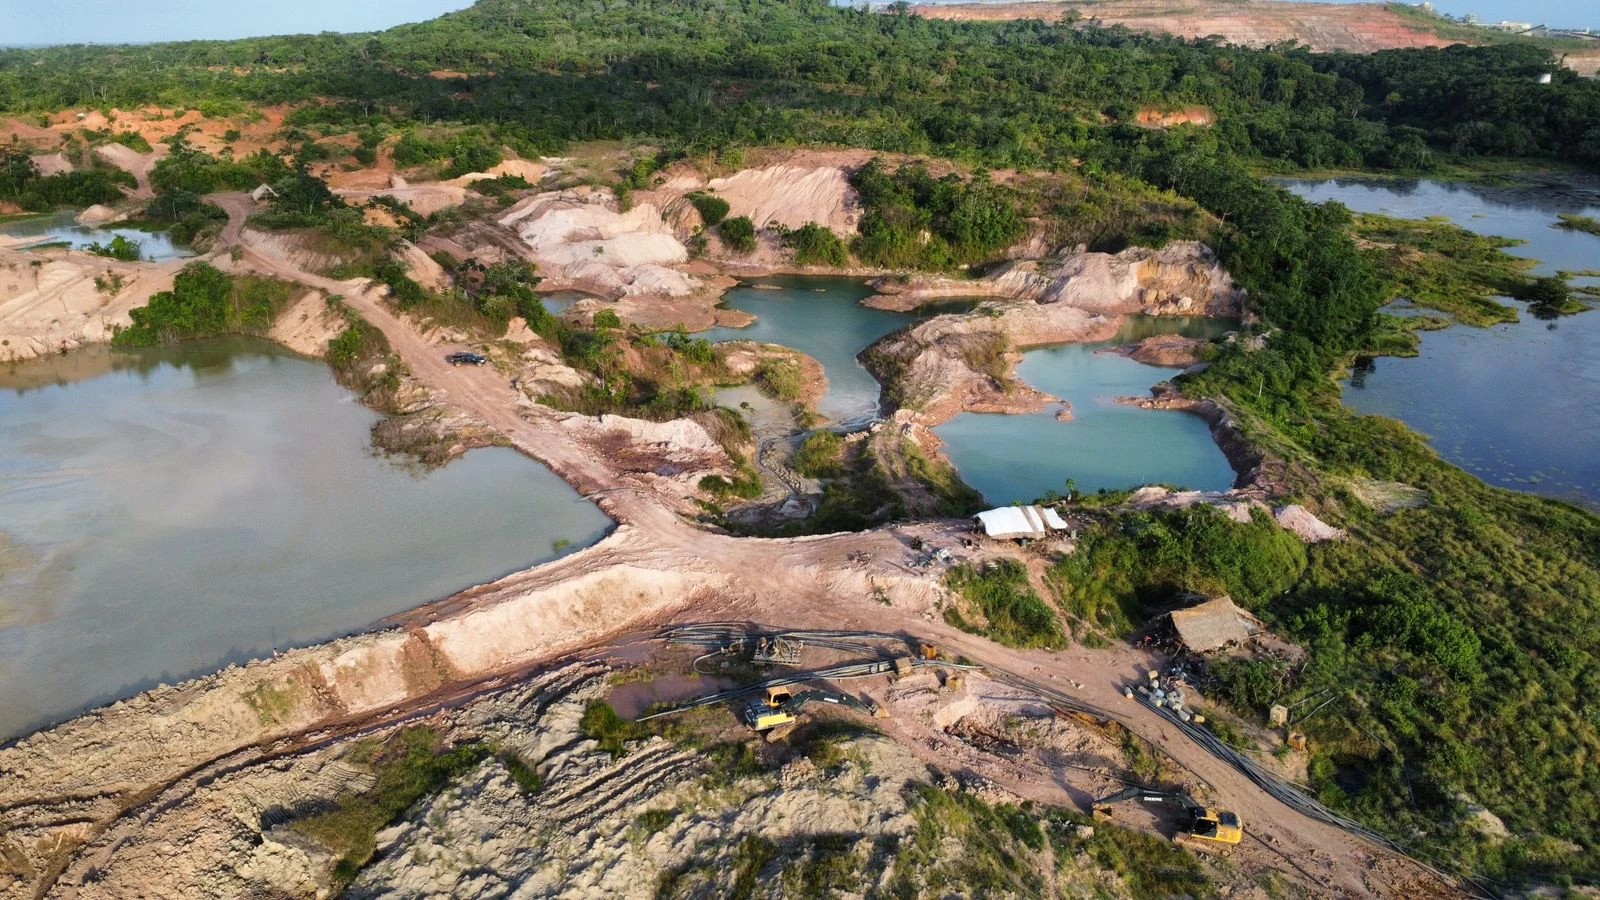 Operação de combate a extração ilegal de ouro em área de proteção ambiental é realizada no MA